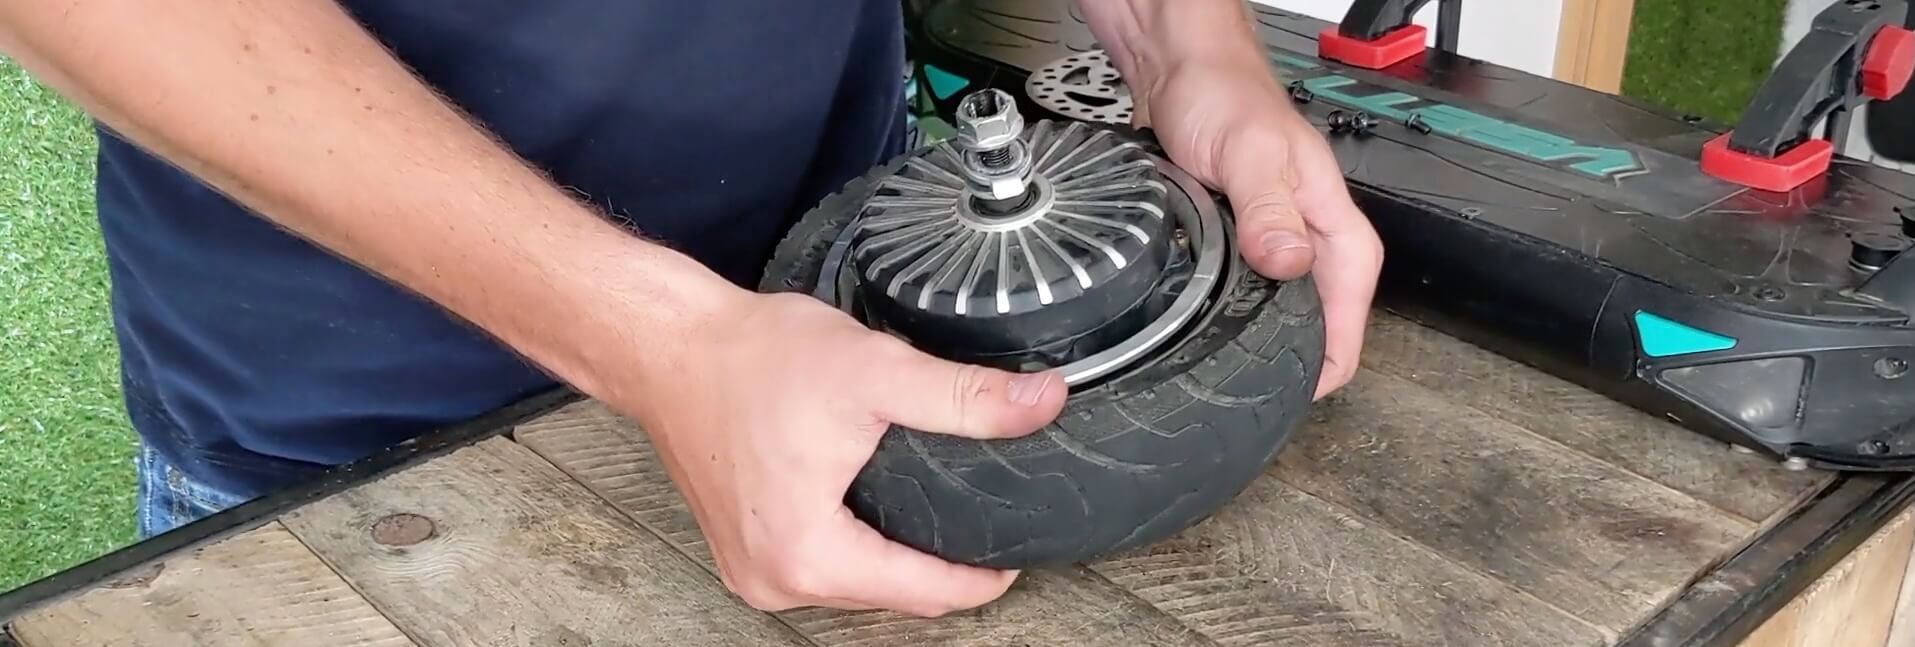 VSETT 9 - Roue Avant - Retirer l’ancien pneu